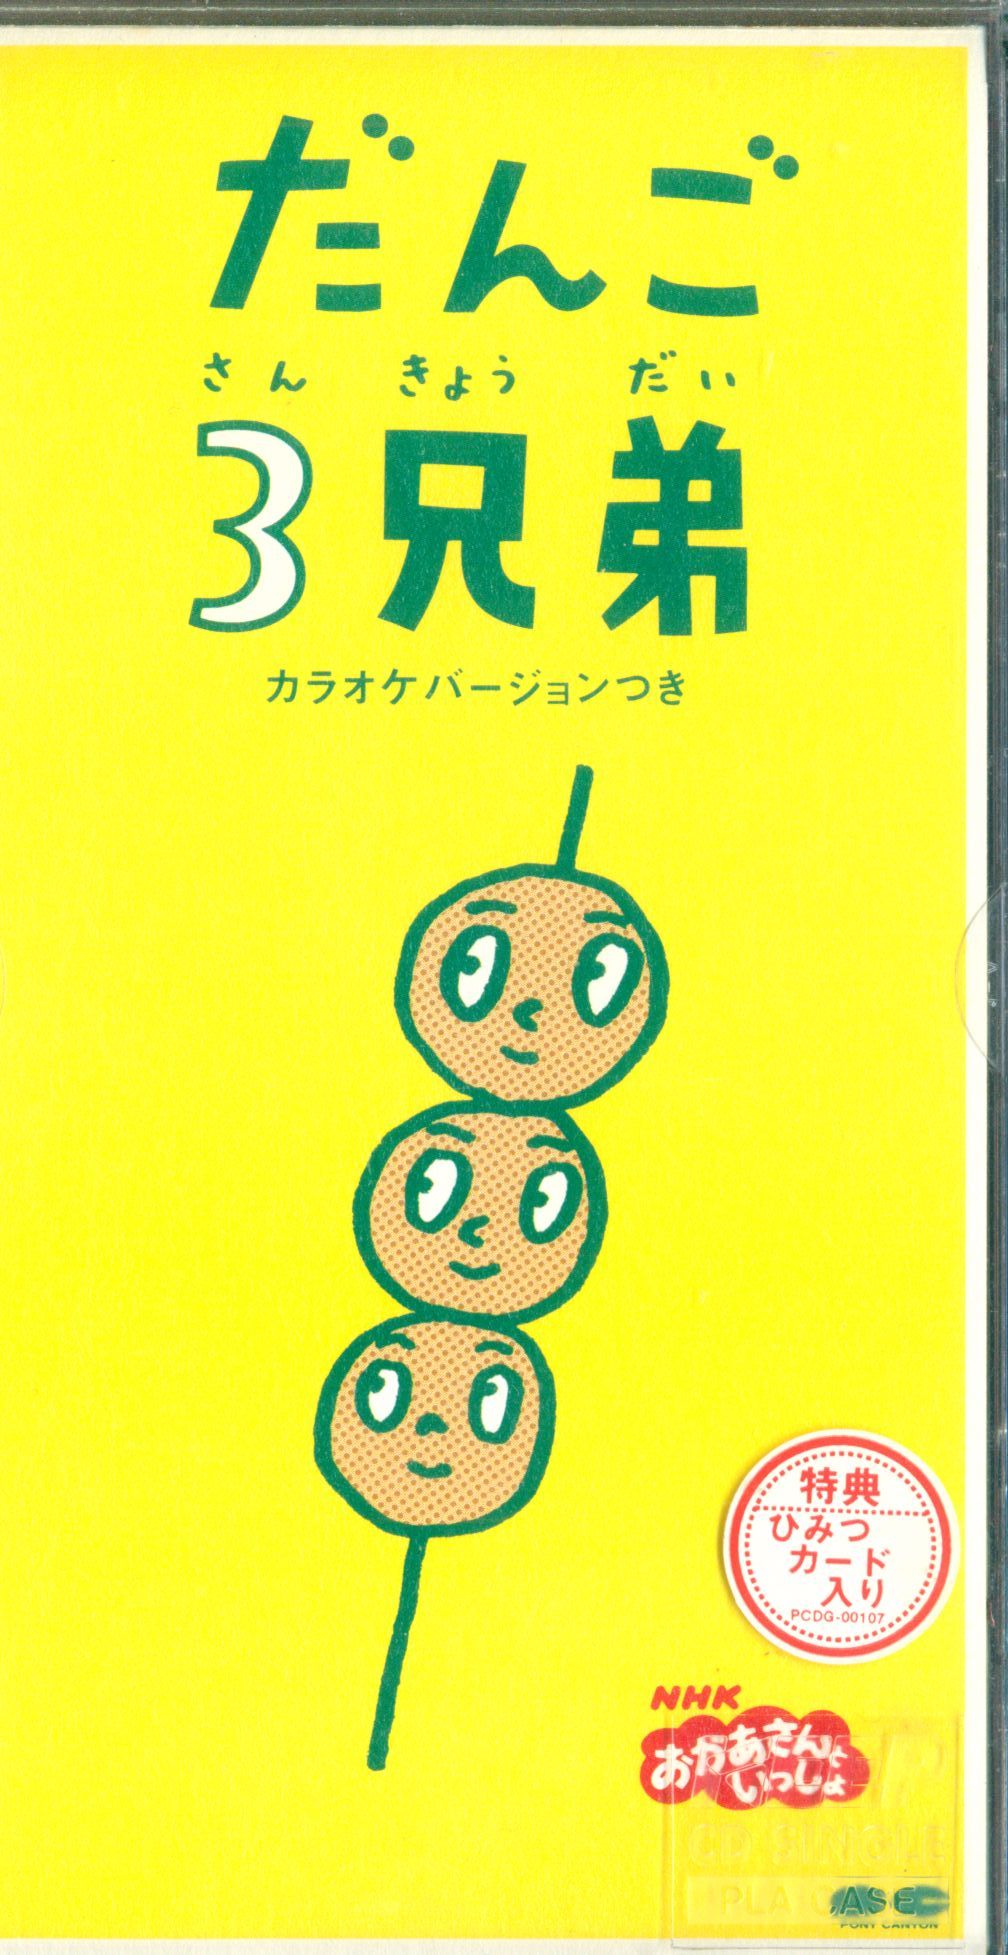 NHK おかあさんといっしょ 団子3兄弟 カラオケバージョンつき 8cmCD